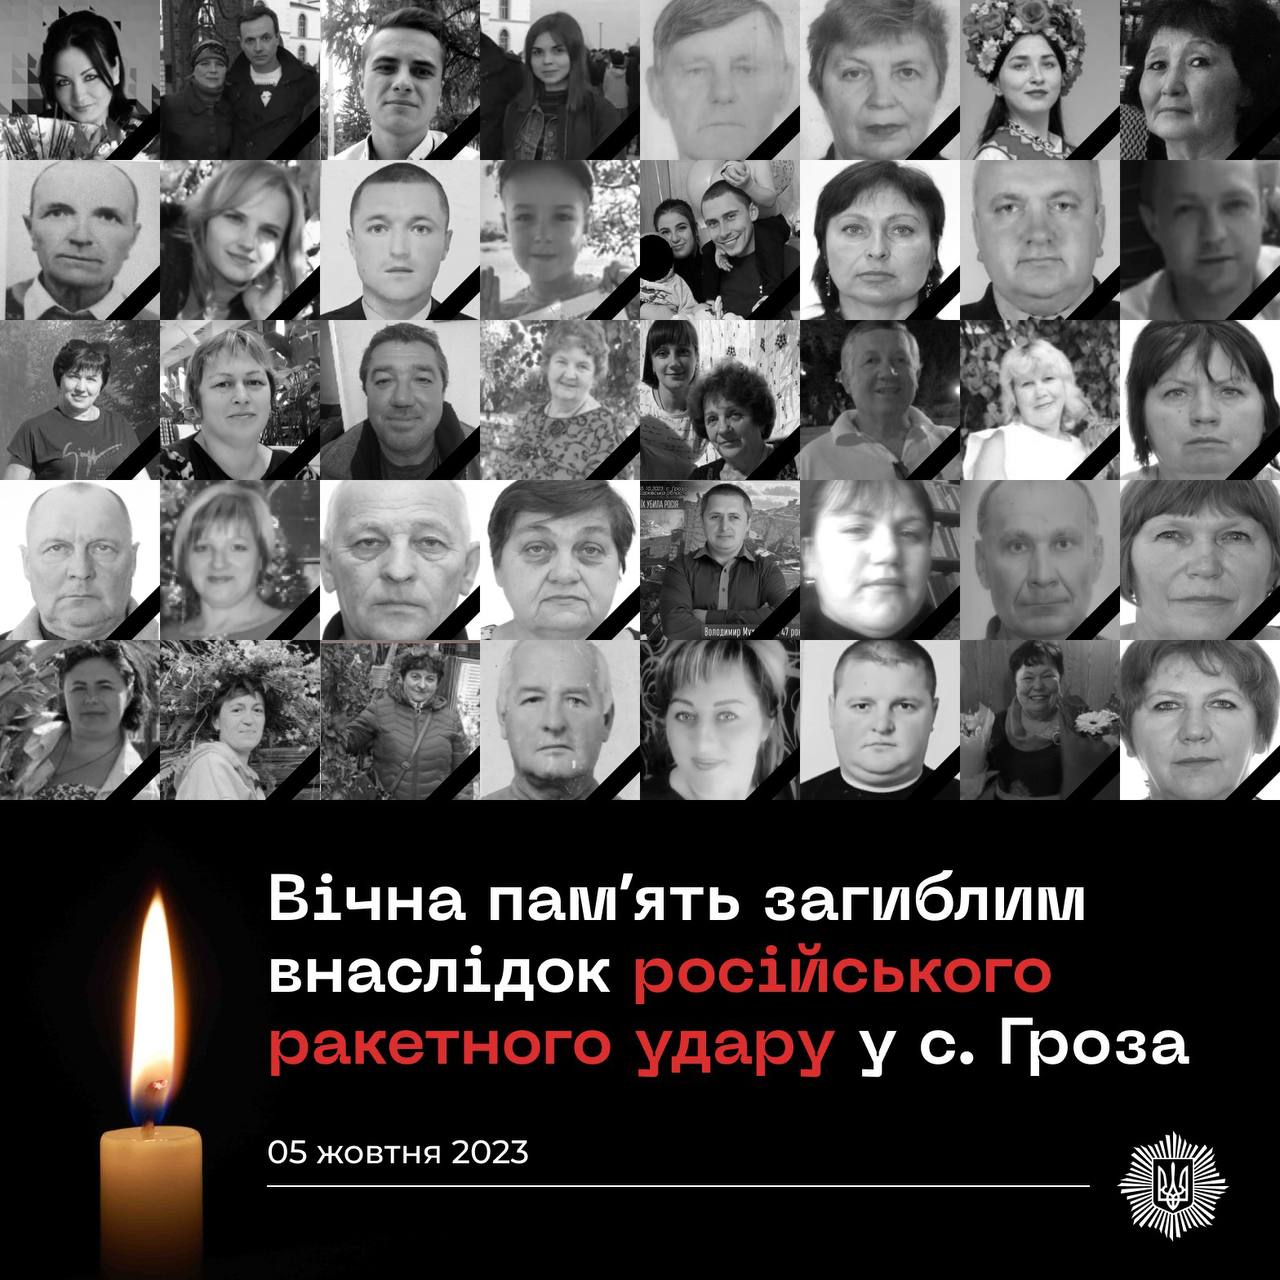 Погибли семьи в несколько поколений: МВД показало фото погибших в Грозе — фото